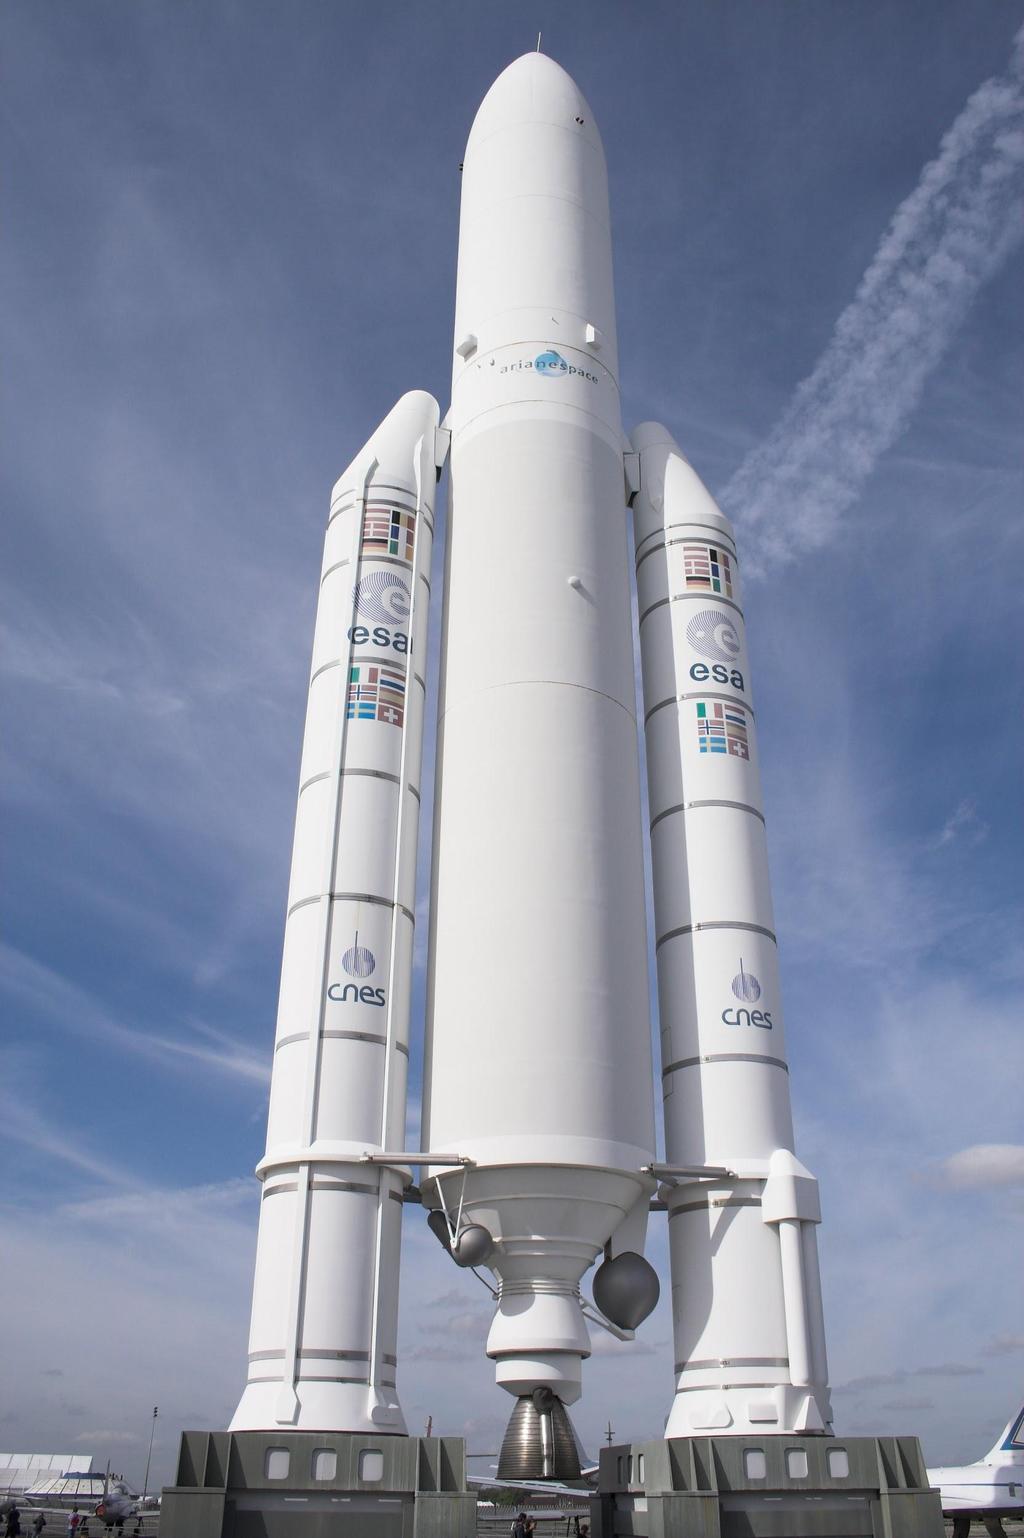 Rymdraketer och satelliter Ariane 5 är en raket som skickar upp satelliter. den väger ca 8 ton. ariane 5 har två krutraketer på sidan.